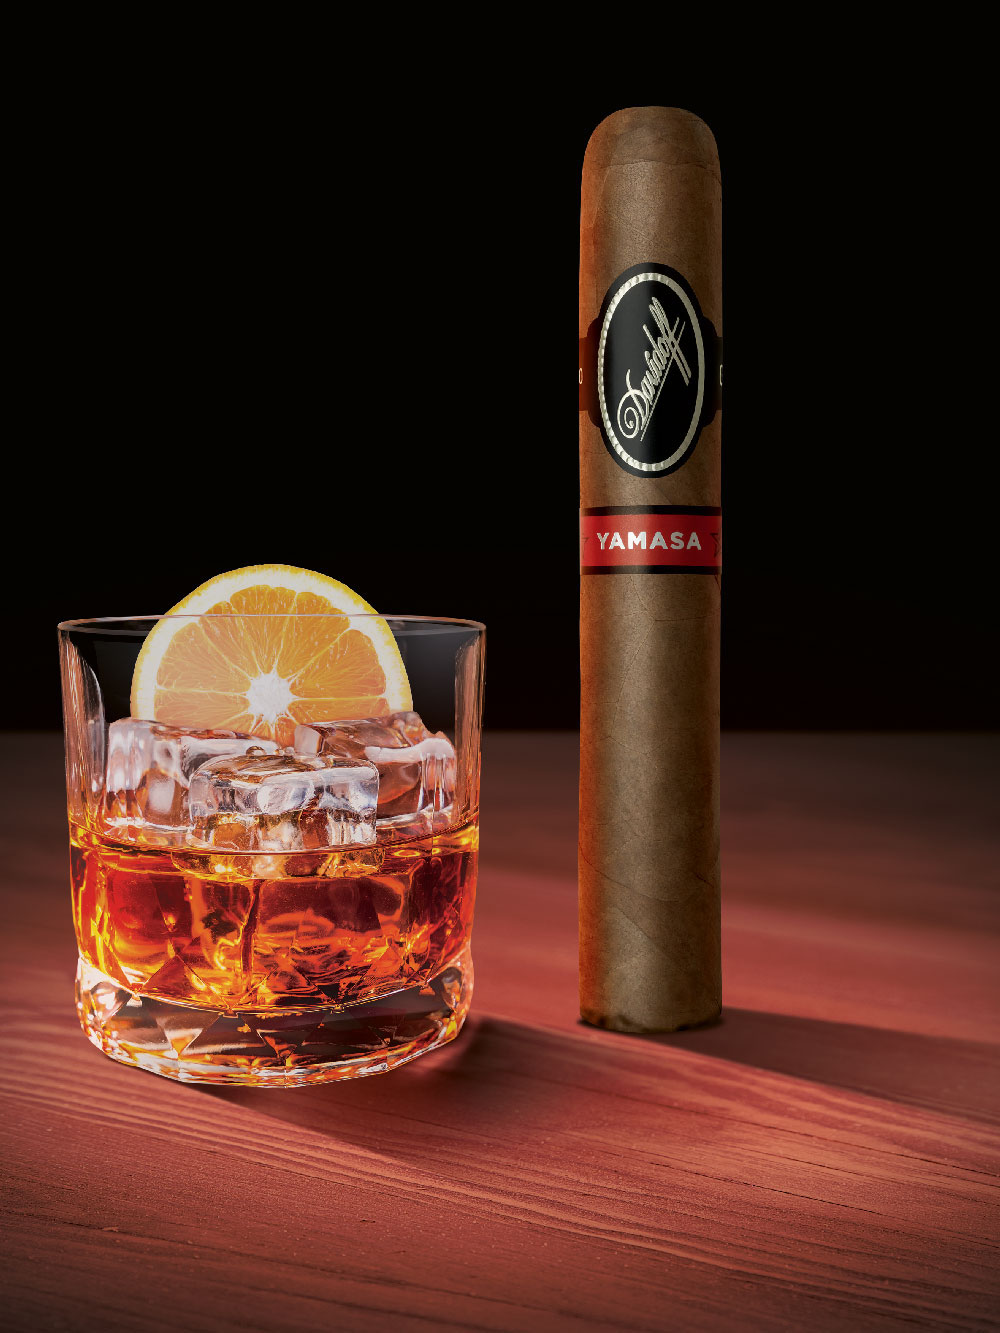 Eine Davidoff Yamasá-Zigarre, die aufrecht neben einem Glas mit Whisky steht.